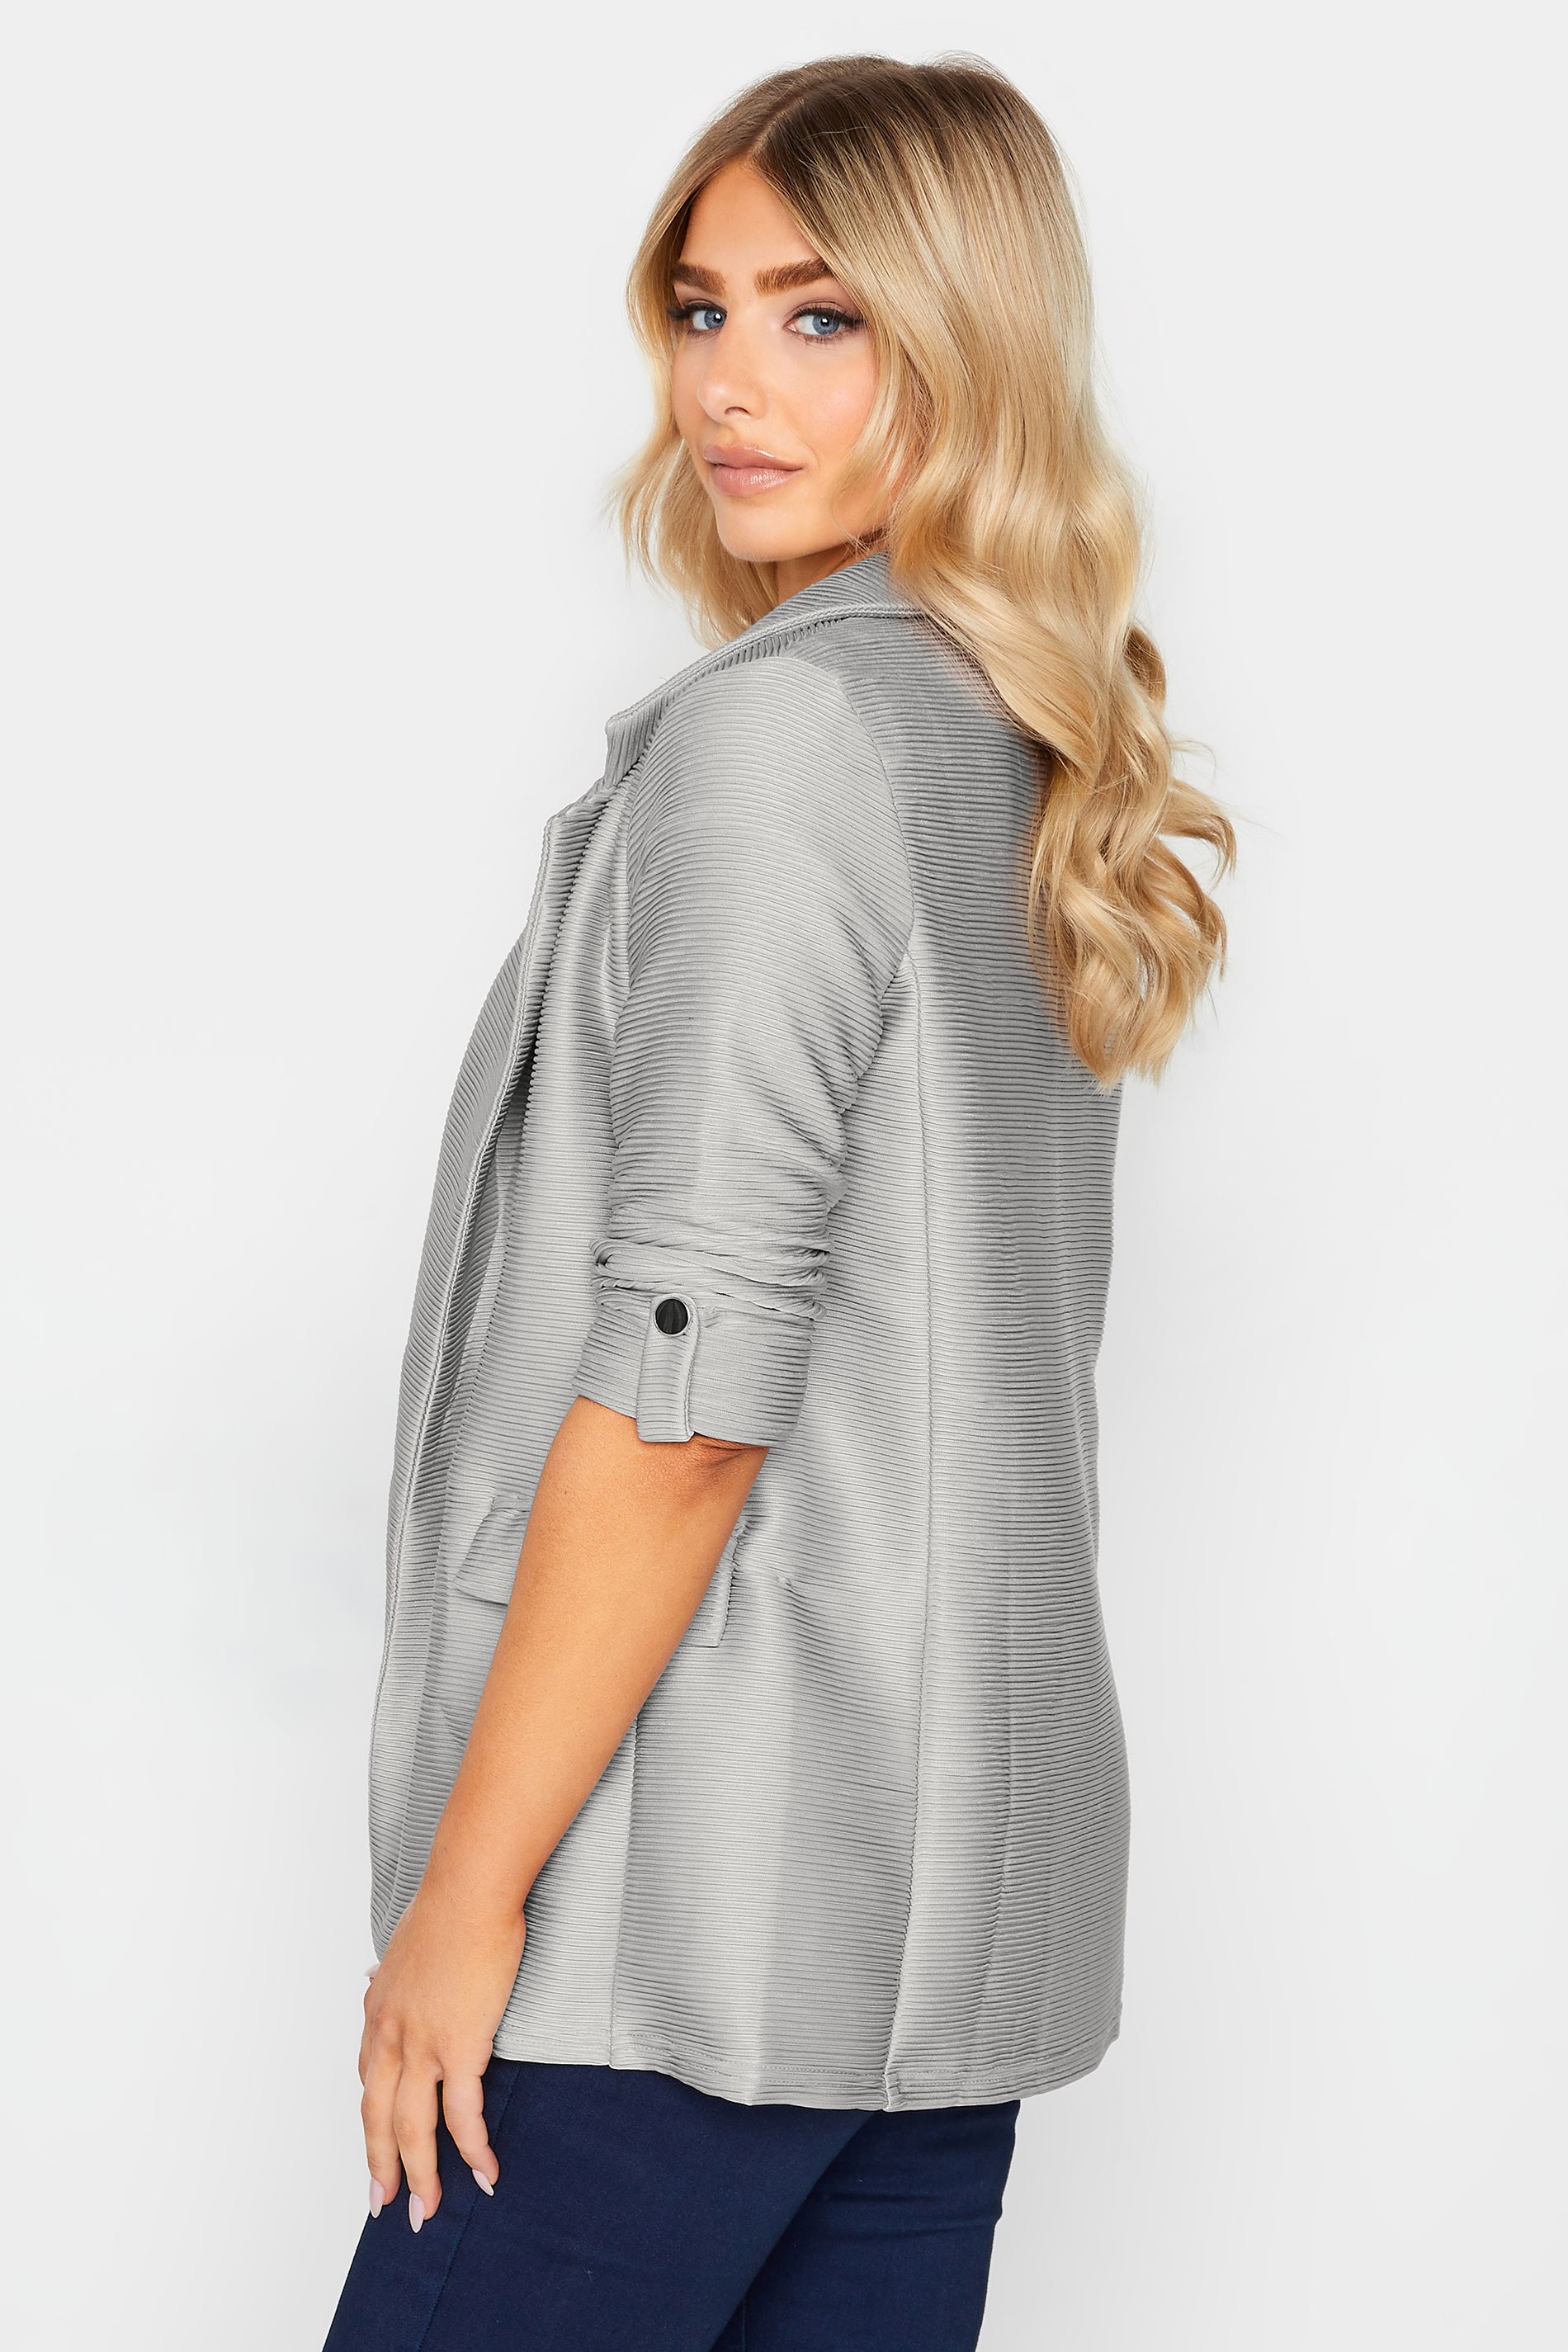 M&Co Grey Textured Blazer | M&Co 3